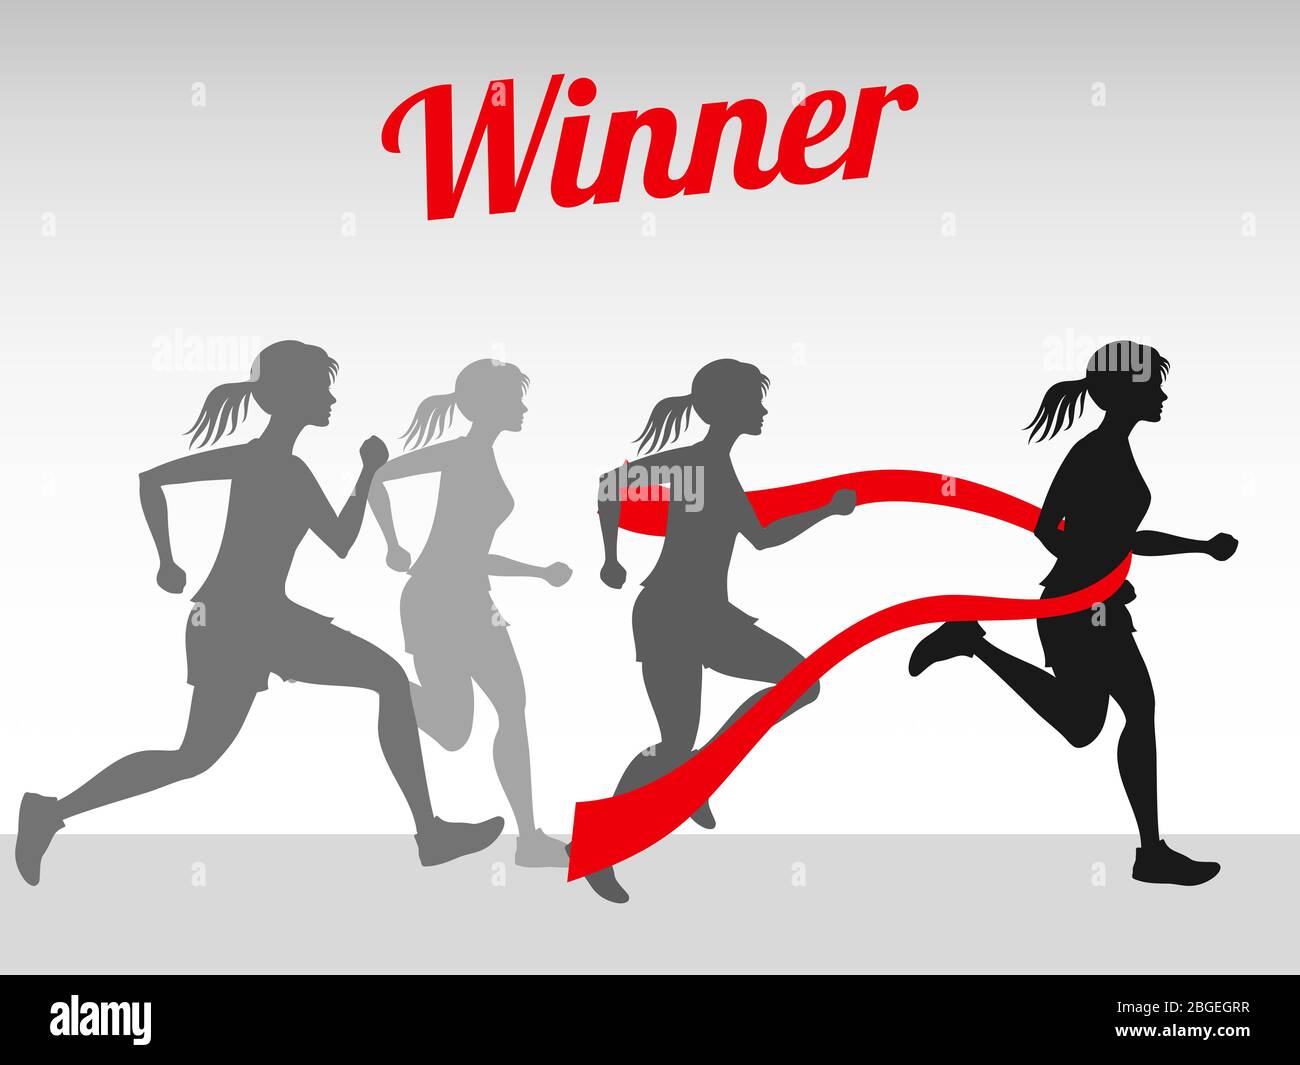 Sieger Vektor-Konzept mit weiblichen Laufsilhouetten auf Finish Tape Illustration Stock Vektor